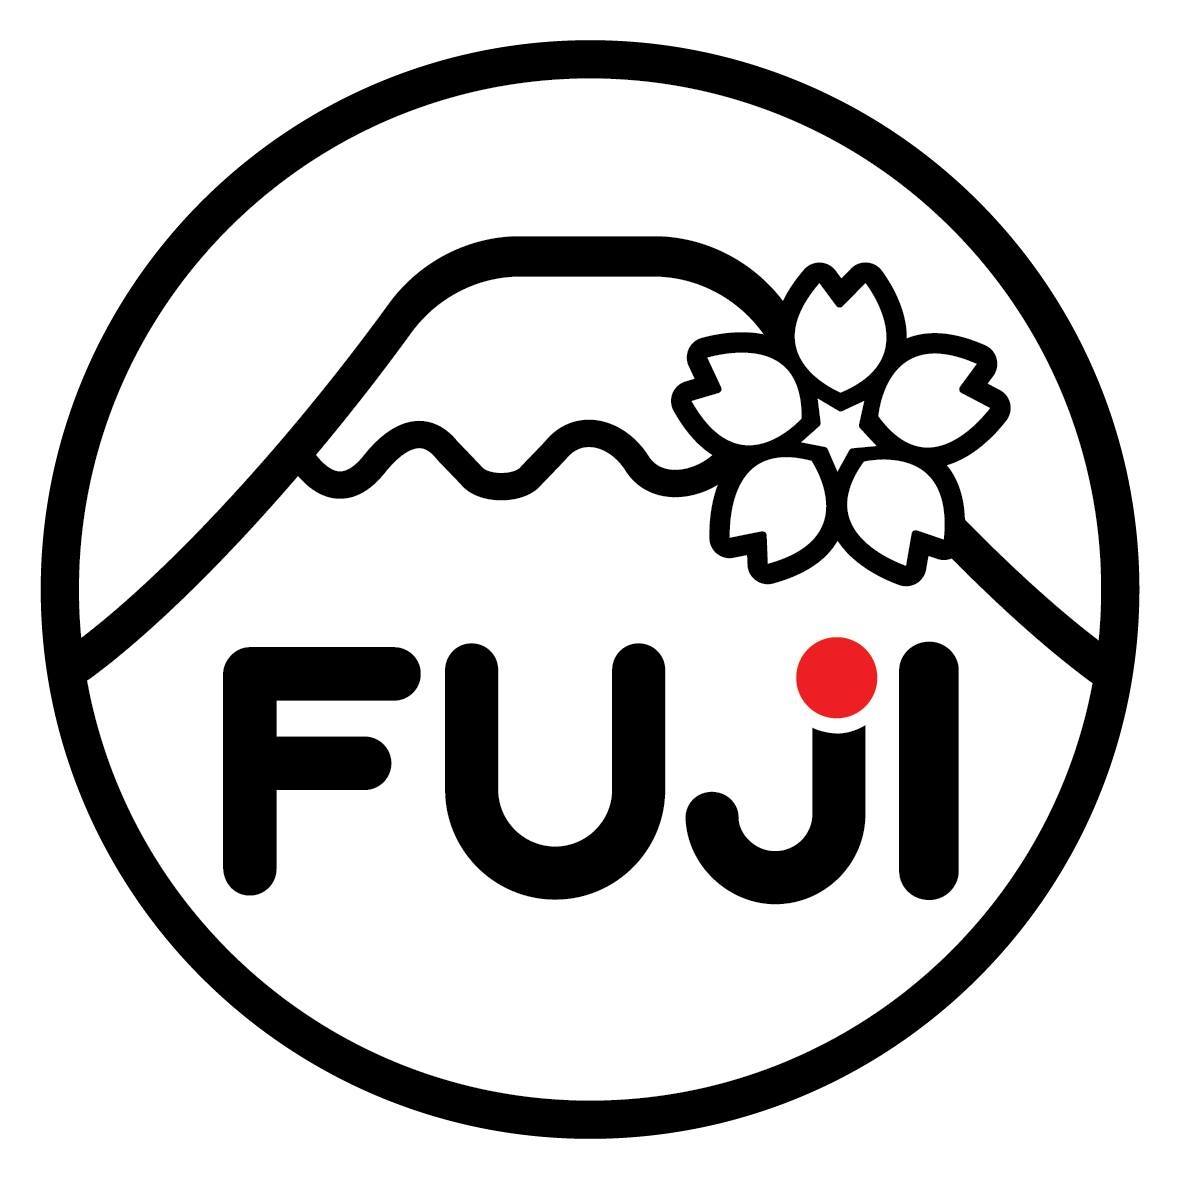 Fuji,Fuji Gel Garden Suncreen ,ครีมกันแดดfuji,Fuji Cream,ฟูจิ การ์เด้น เจล ซันสกรีน,Fuji Gel Garden Suncreenราคา,Fuji Gel Garden Suncreenรีวิว